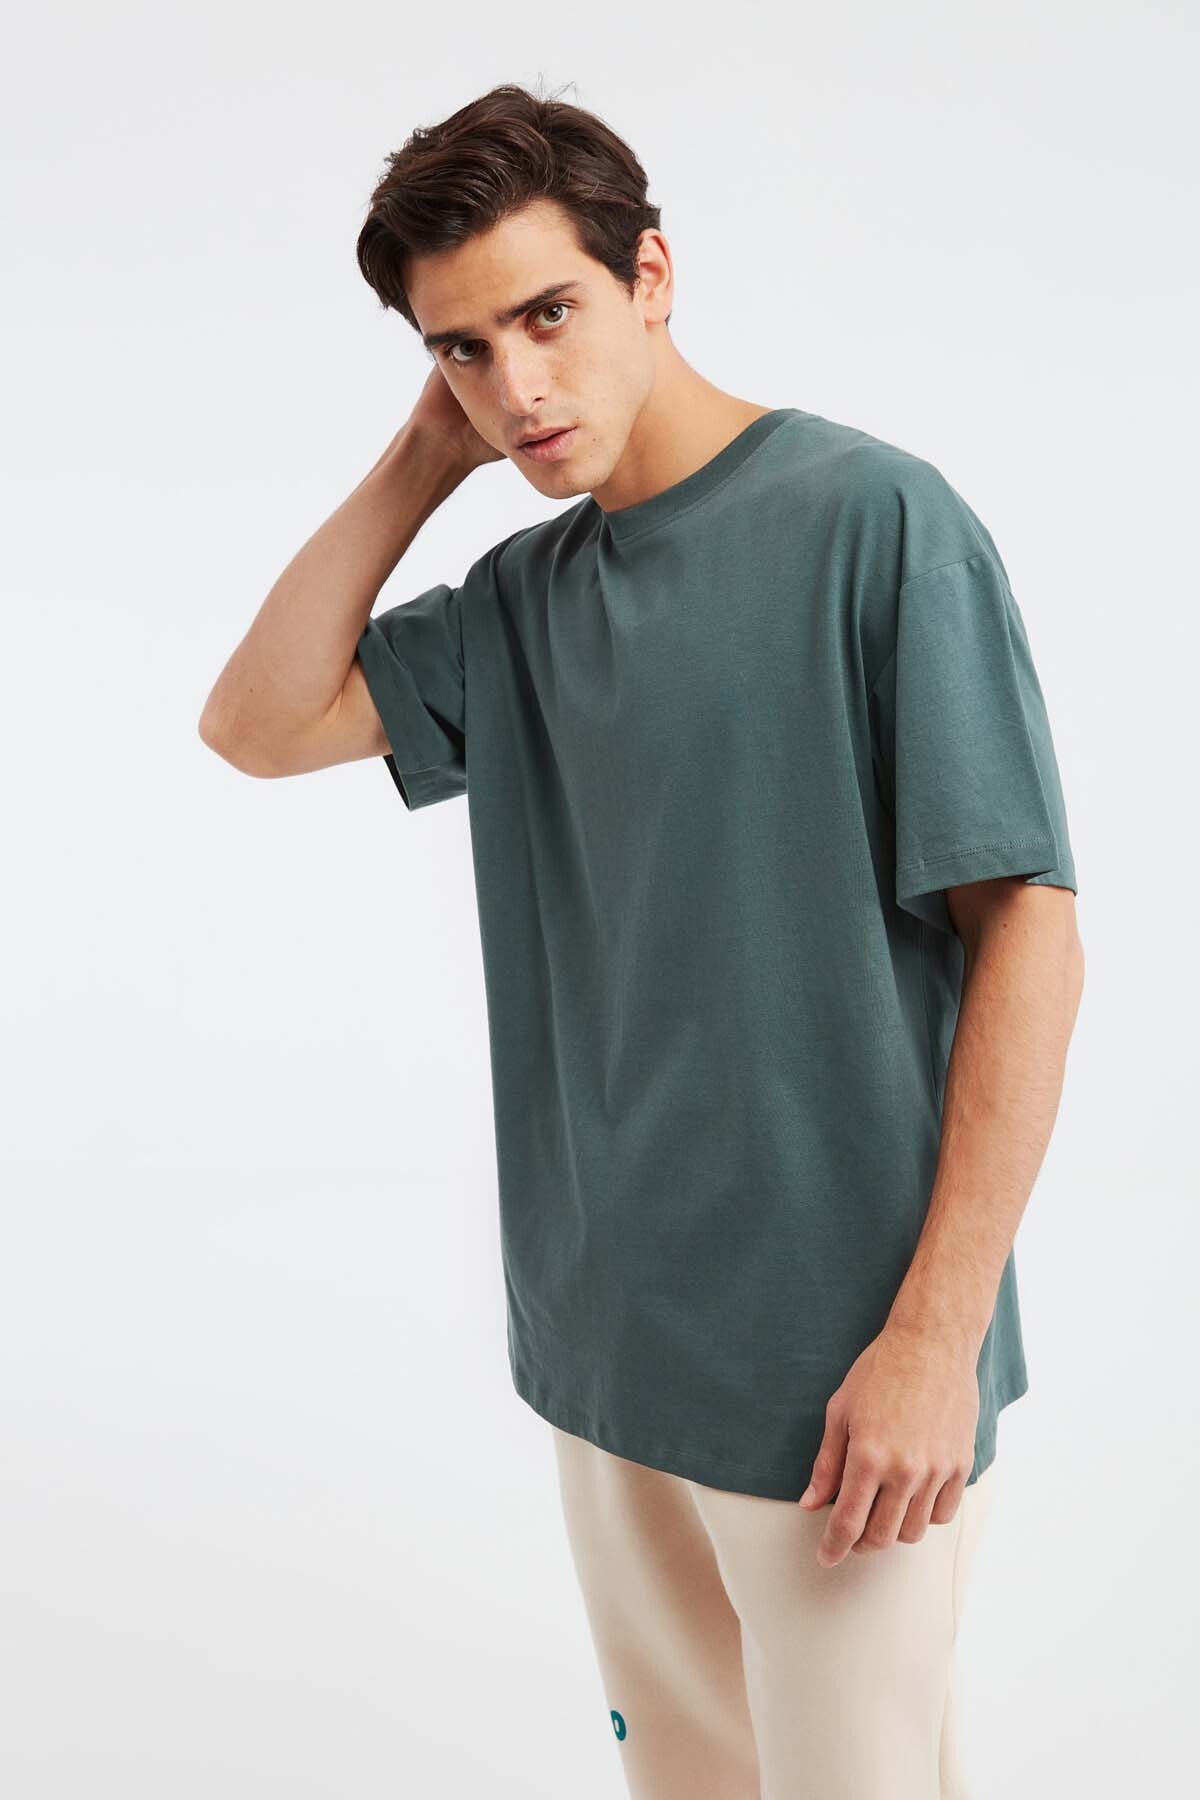 Мужская футболка оверсайз Jett из 100% хлопка с плотной текстурой GRIMELANGE, зеленый футболка мужская оверсайз из хлопка l